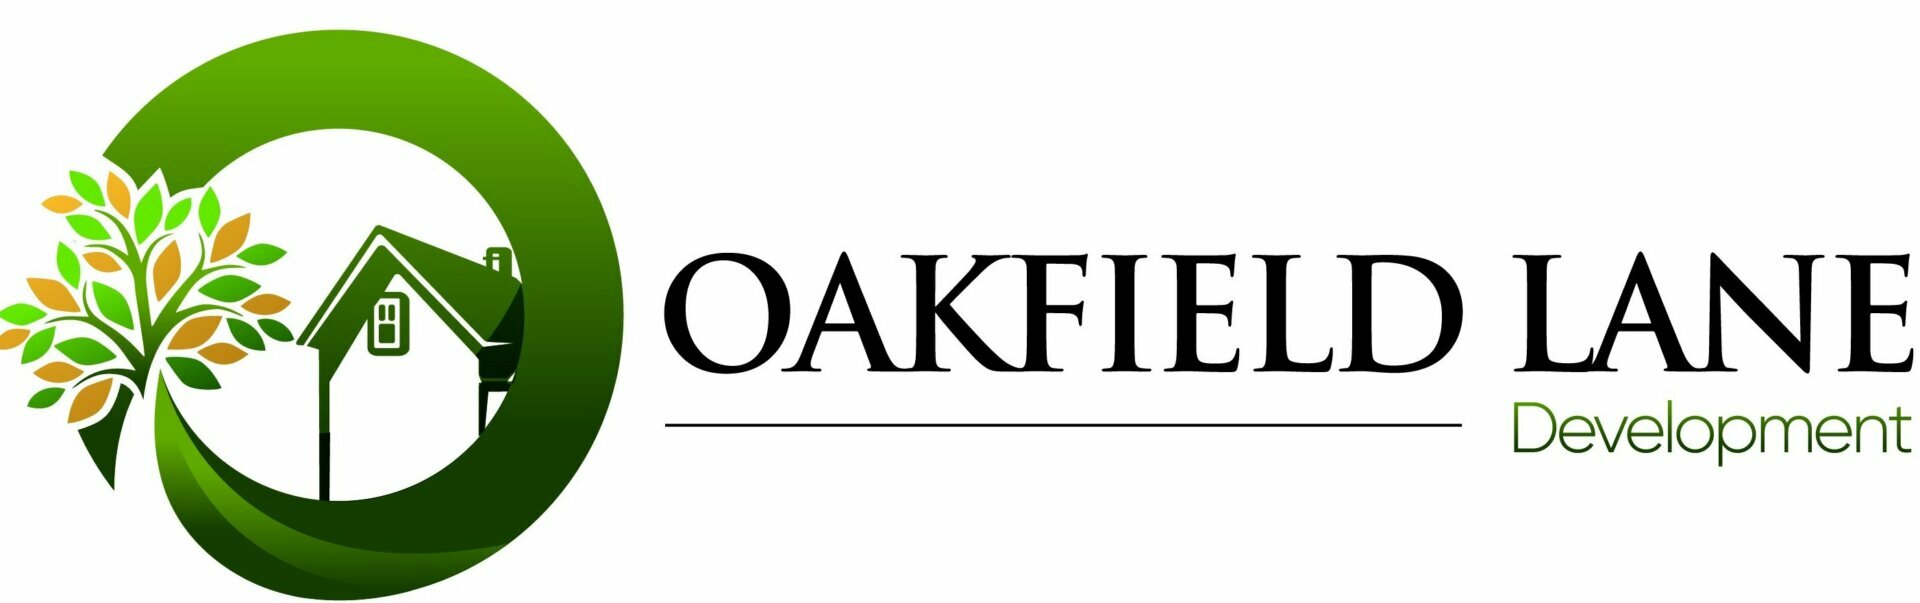 Oakfield Lane Development logo